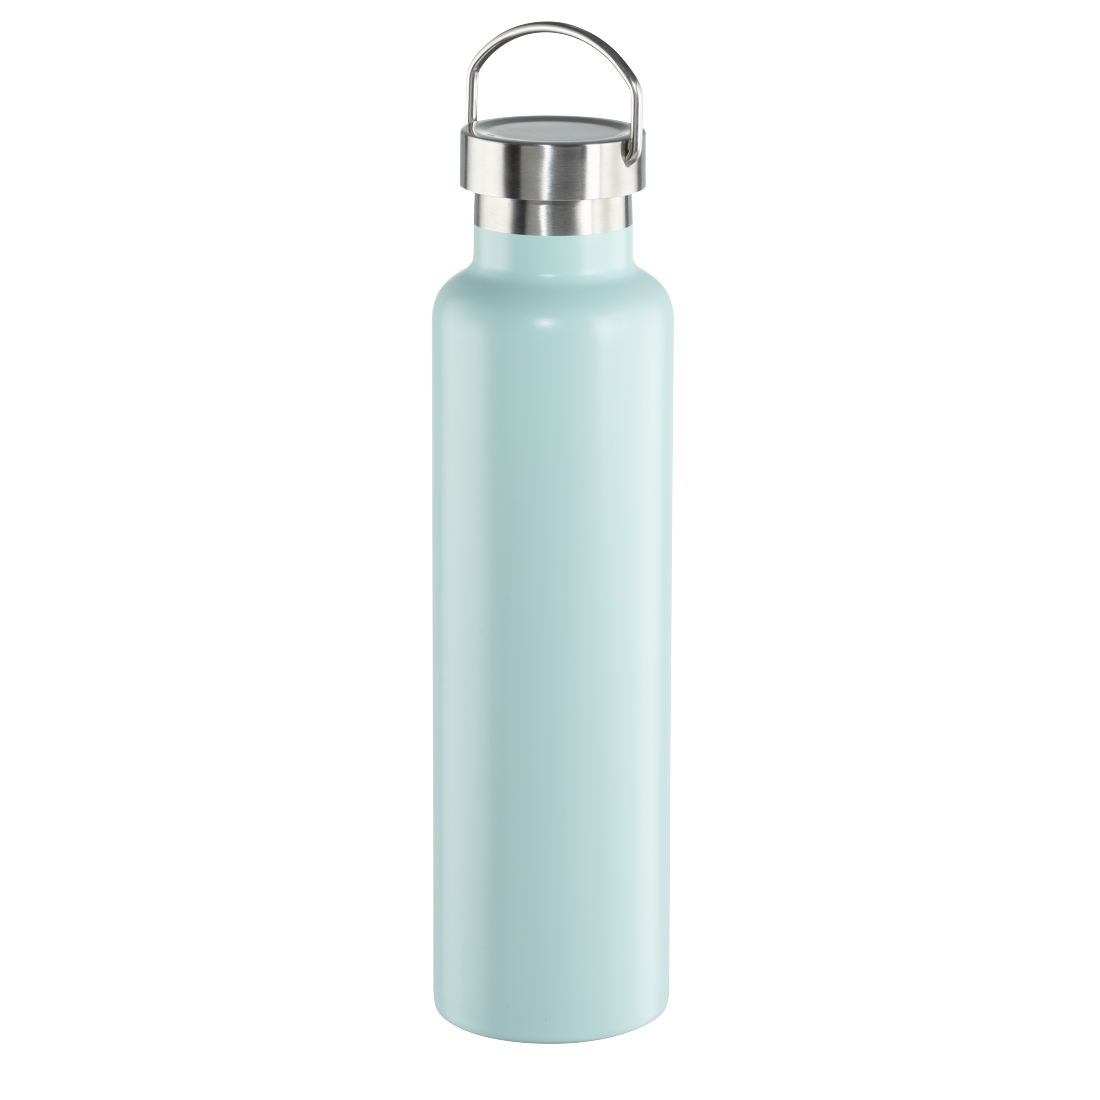 abx2 Druckfähige Abbildung 2 - Xavax, Trinkflasche, 750 ml, Drehverschluss, auslaufsicher, kohlensäurefest, Blau